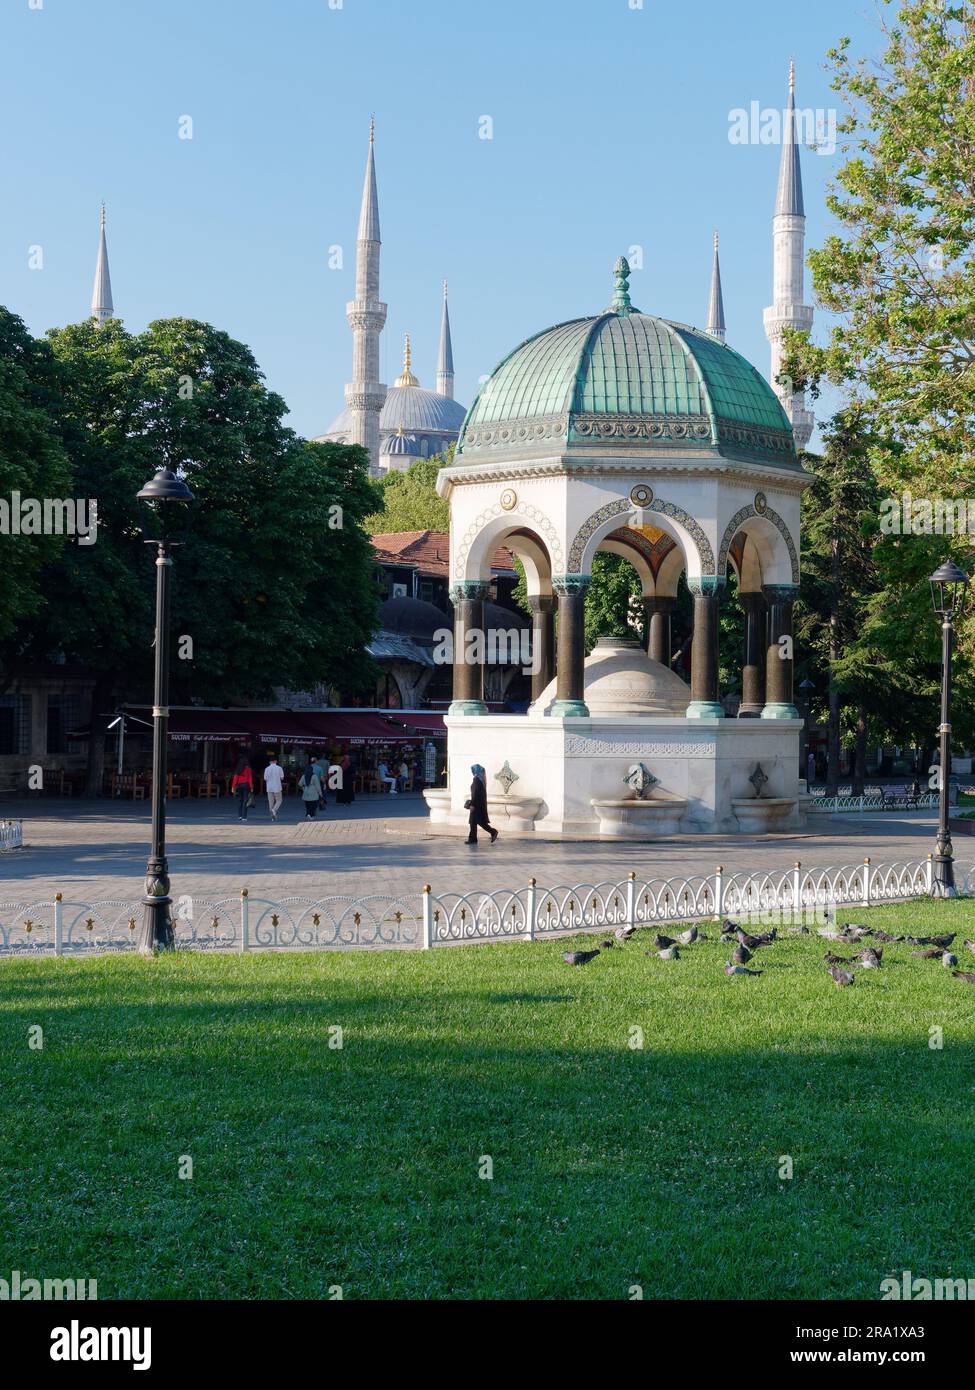 Deutscher Brunnen (Alman Çeşmesi auf Türkisch), Stadtteil Sultanahmet, Istanbul, Türkei. Sultan Ahmed aka Blaue Moschee dahinter. Stockfoto